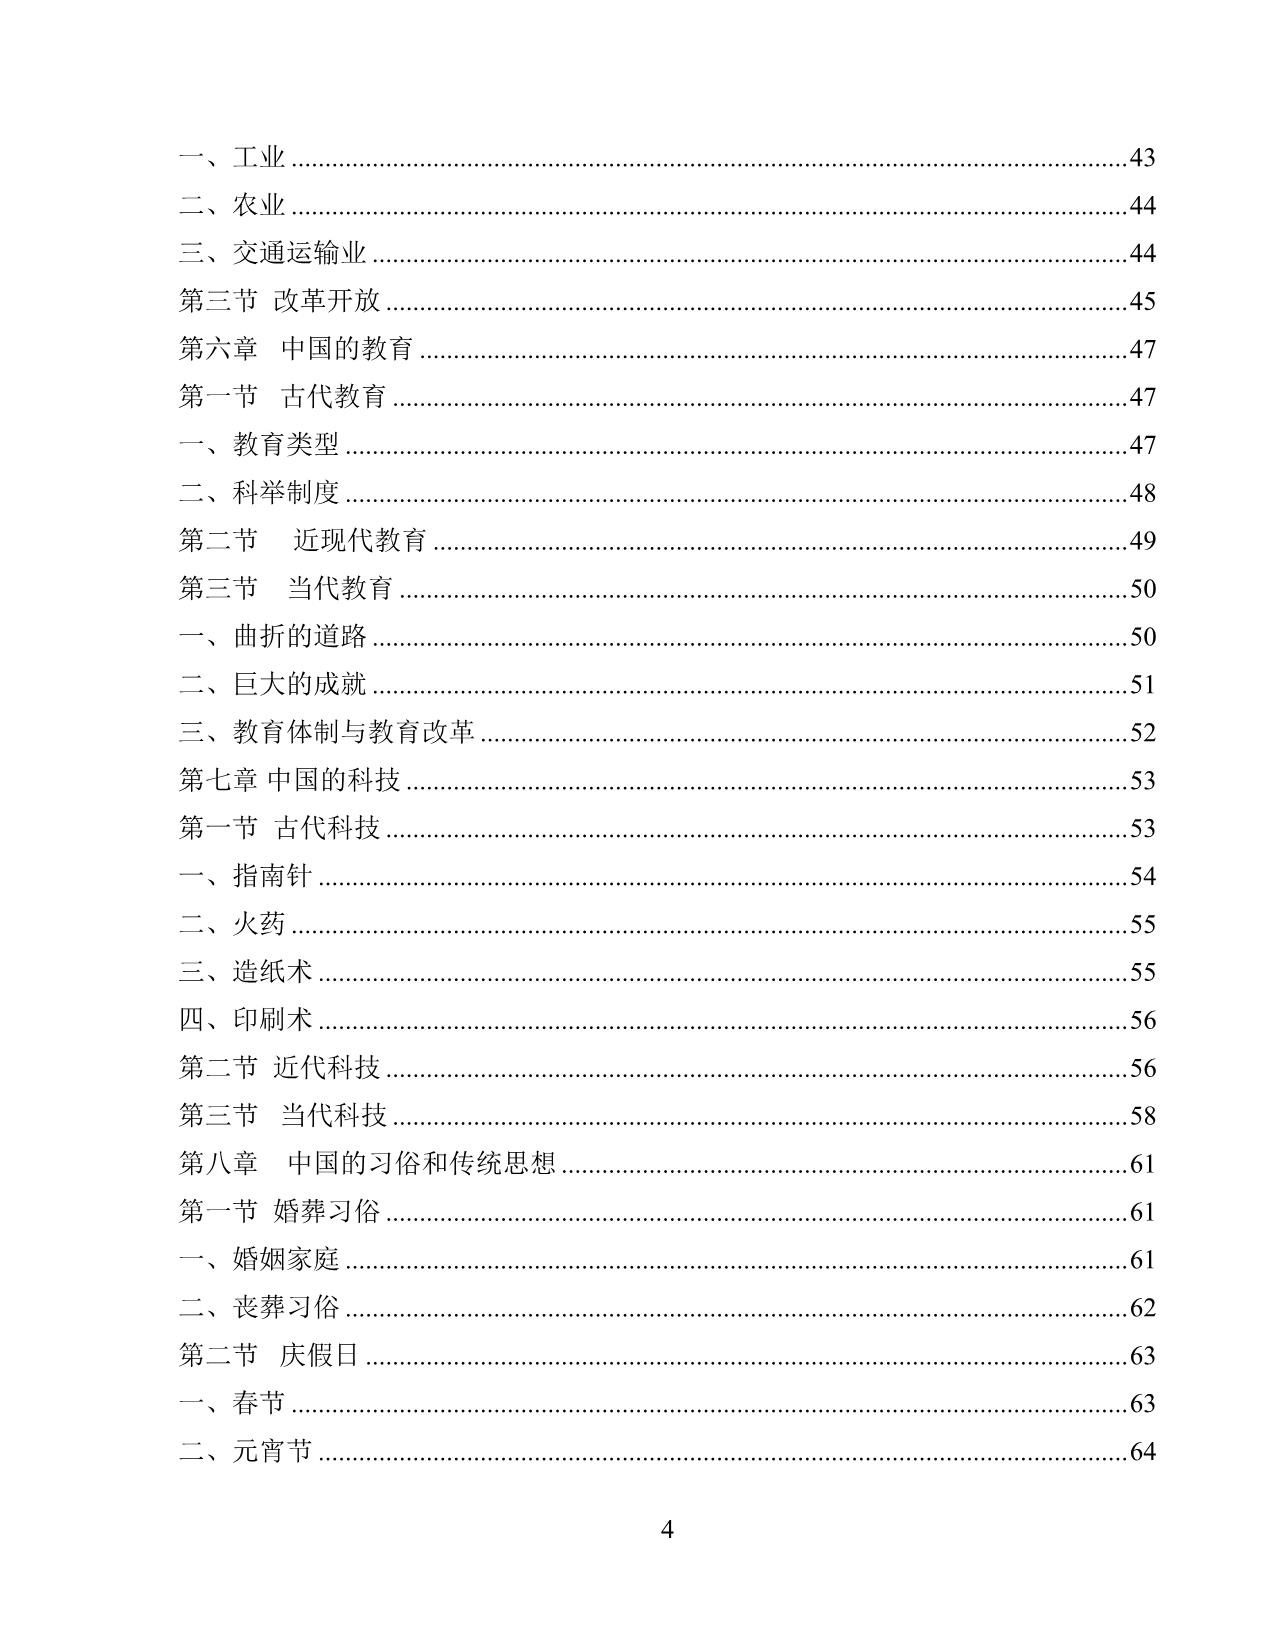 Giáo trình Đất nước học Trung Quốc trang 6